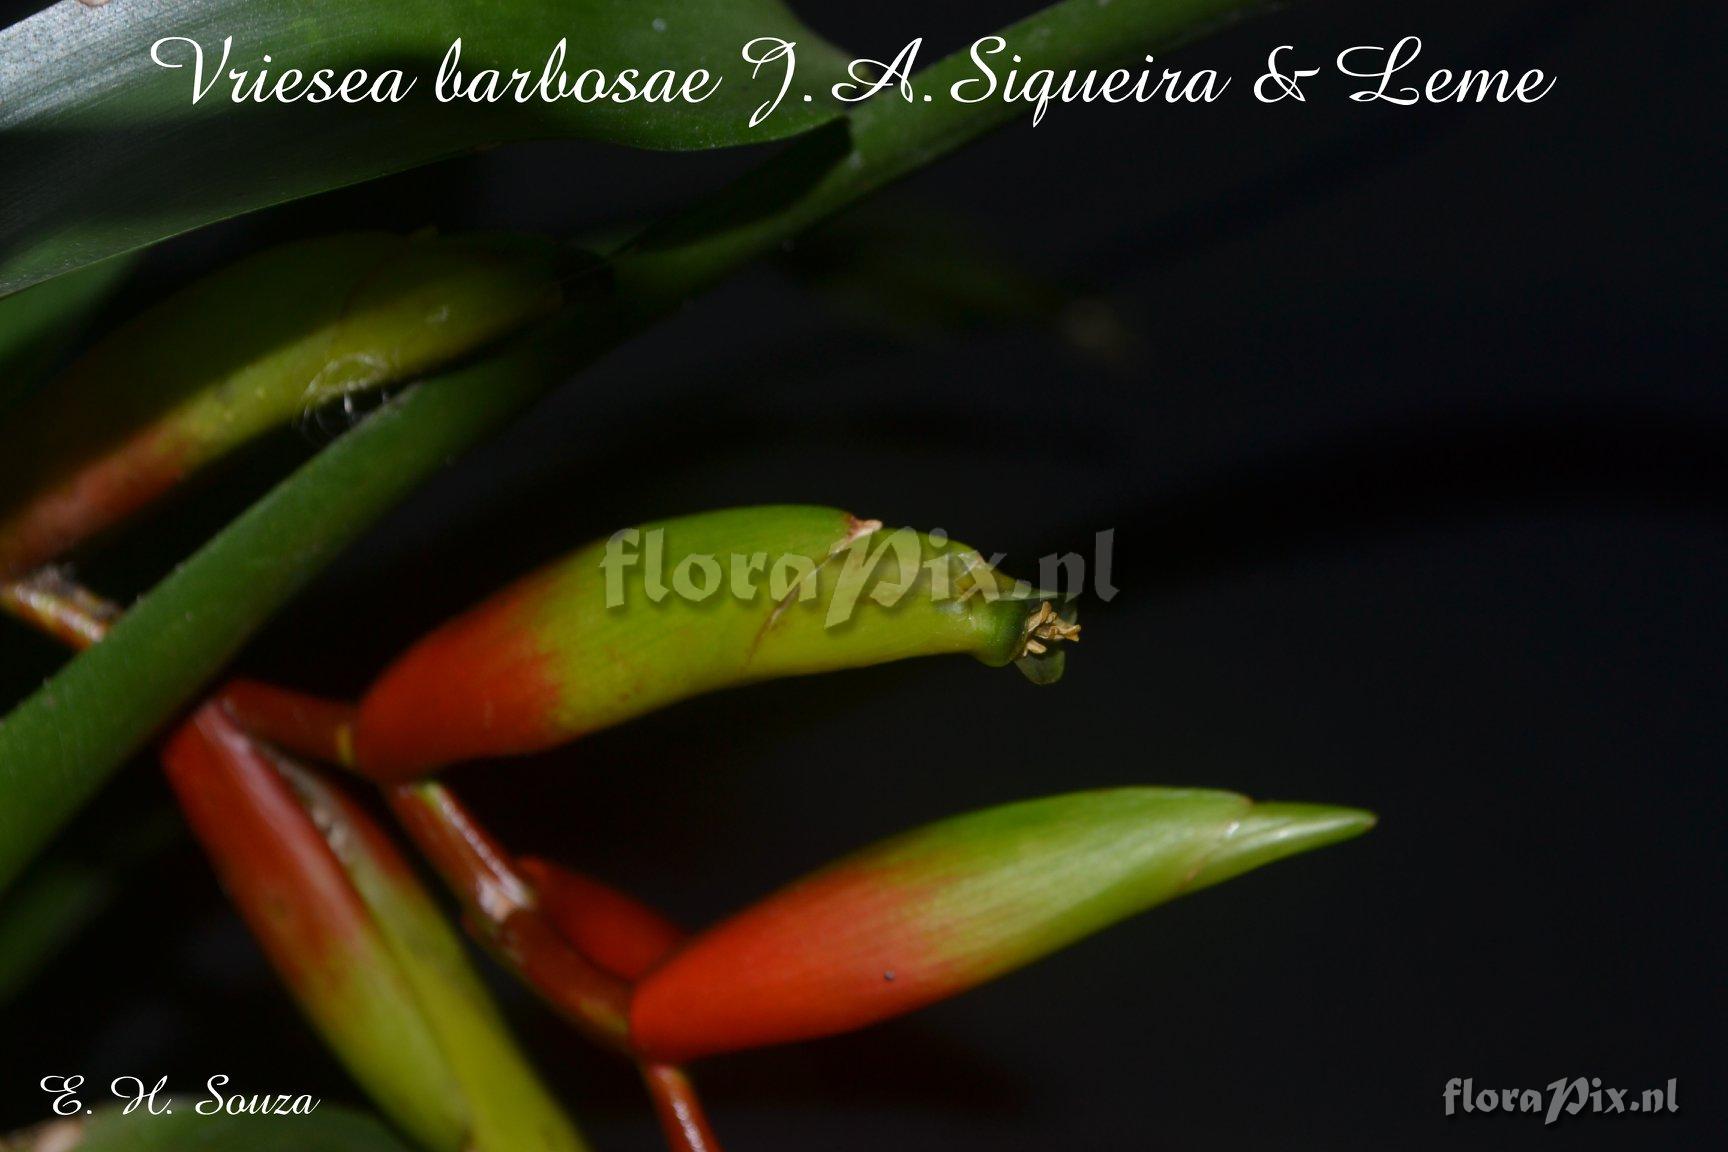 Vriesea barbosae